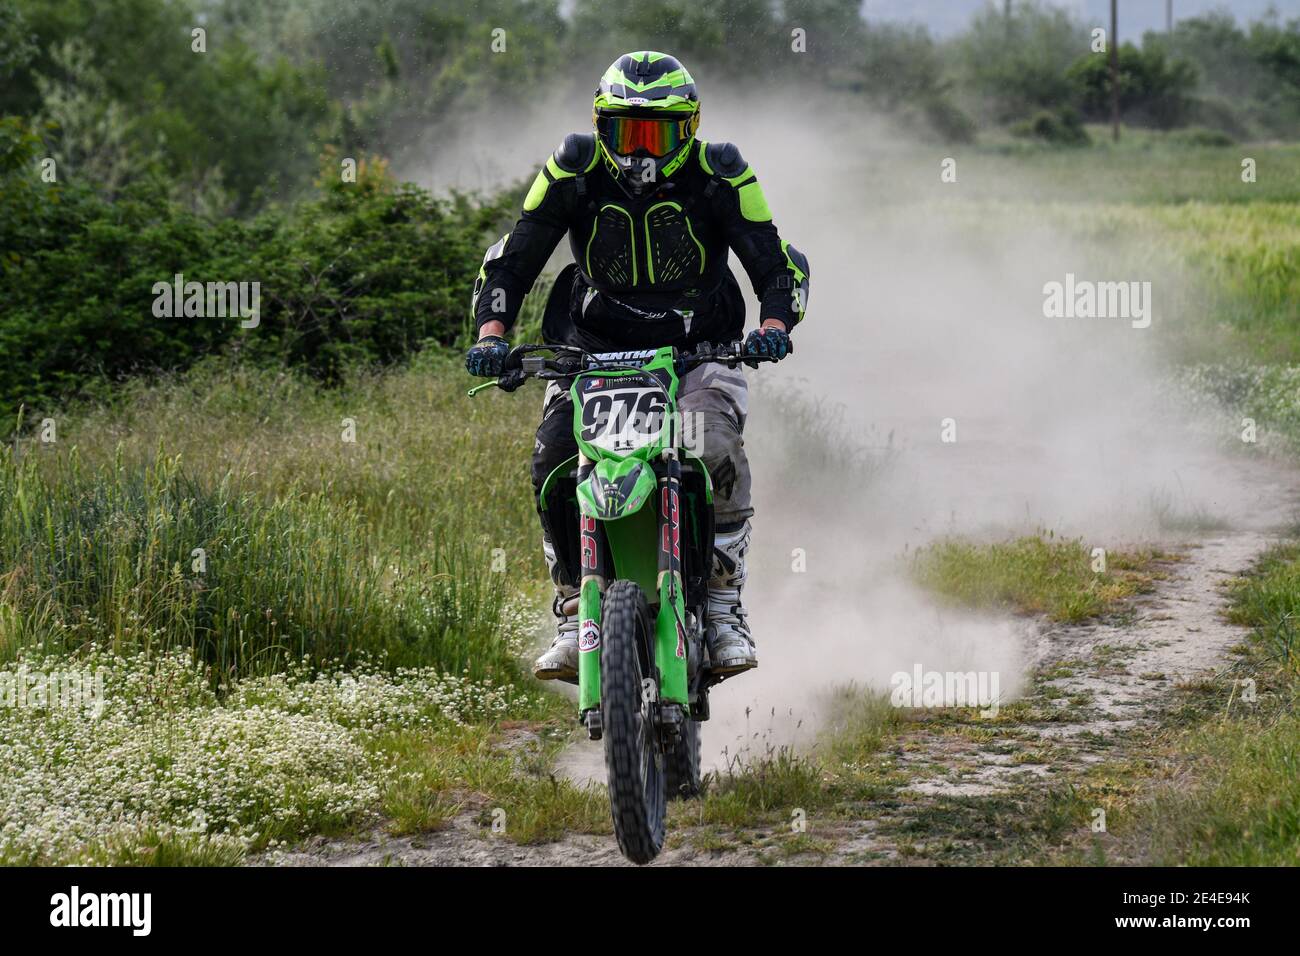 Un motocross de kawasaki conduit sur une route de terre surcultivée avec de l'herbe et des plantes et un nuage de poussière s'élève derrière lui. Banque D'Images